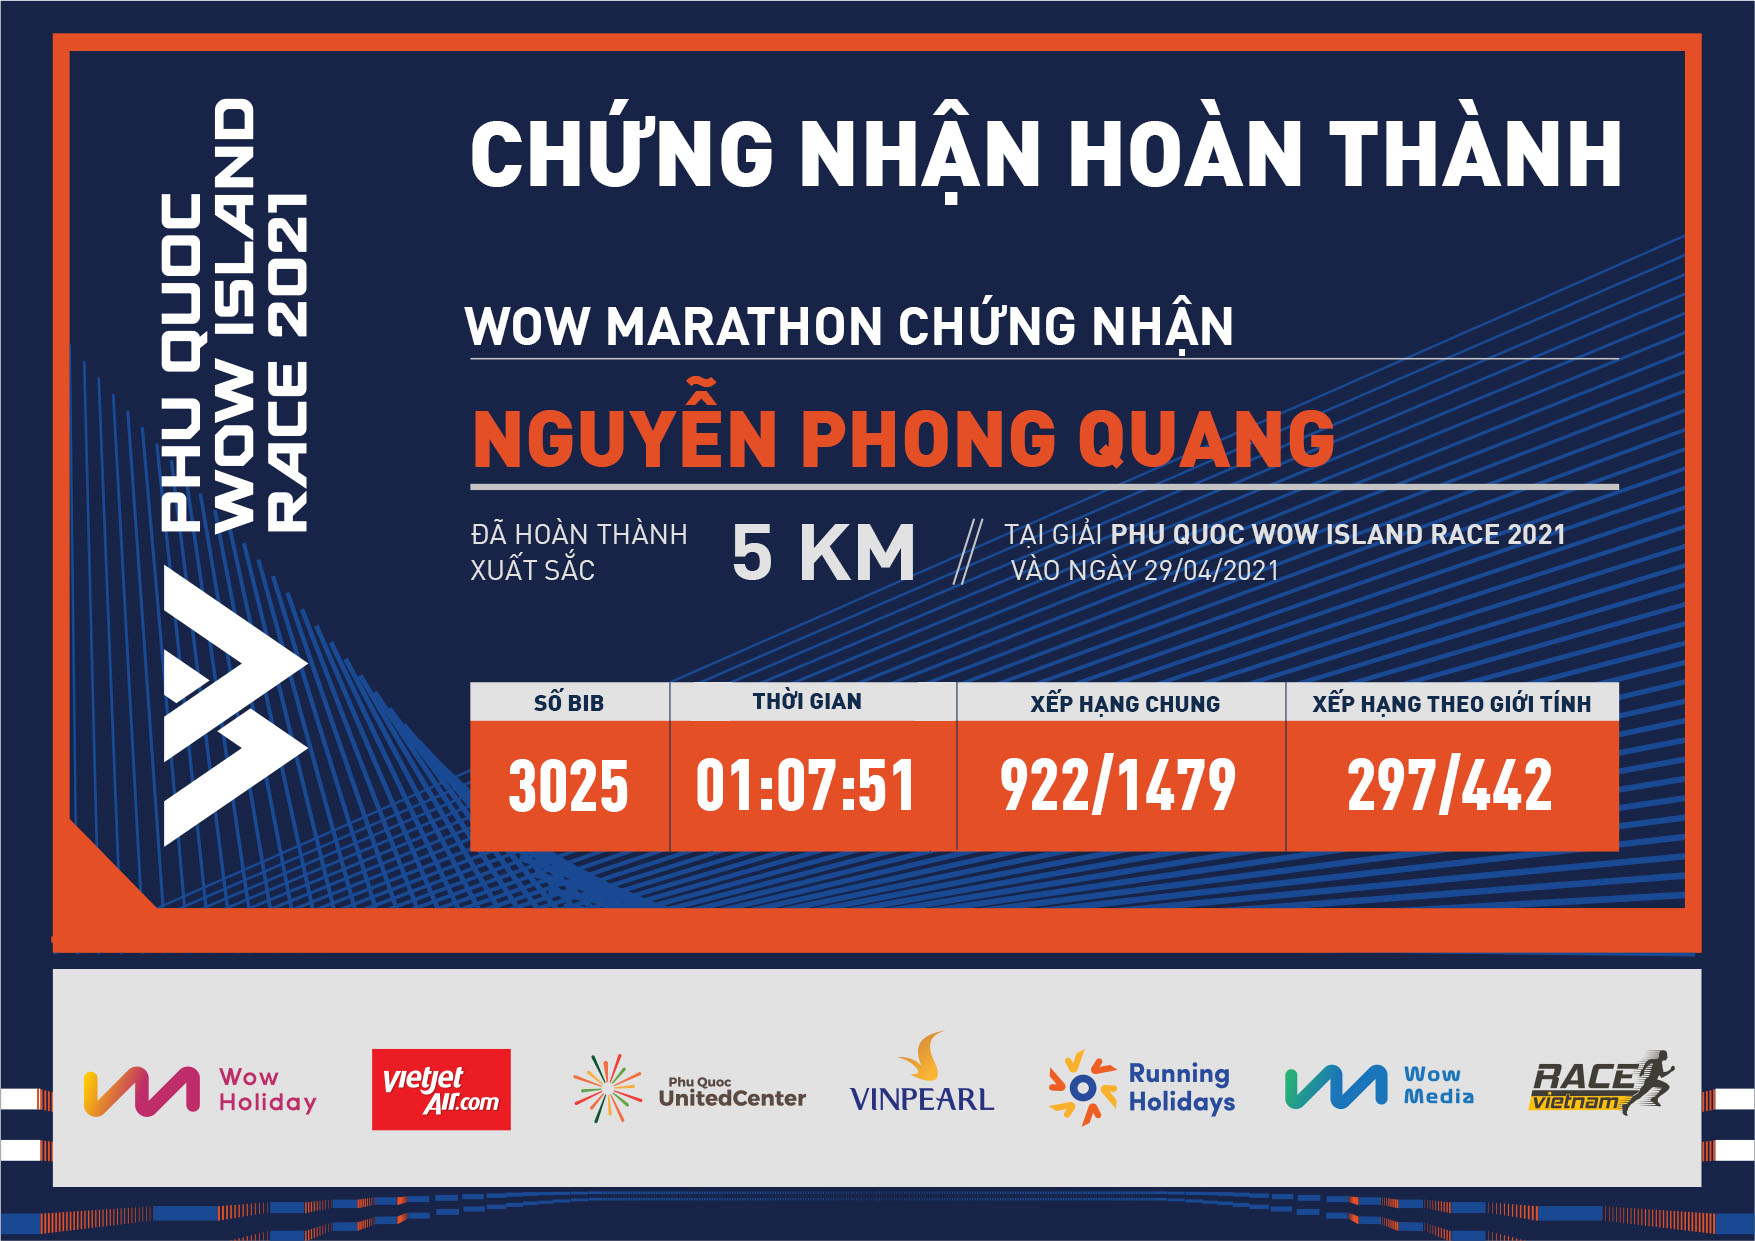 3025 - Nguyễn Phong Quang